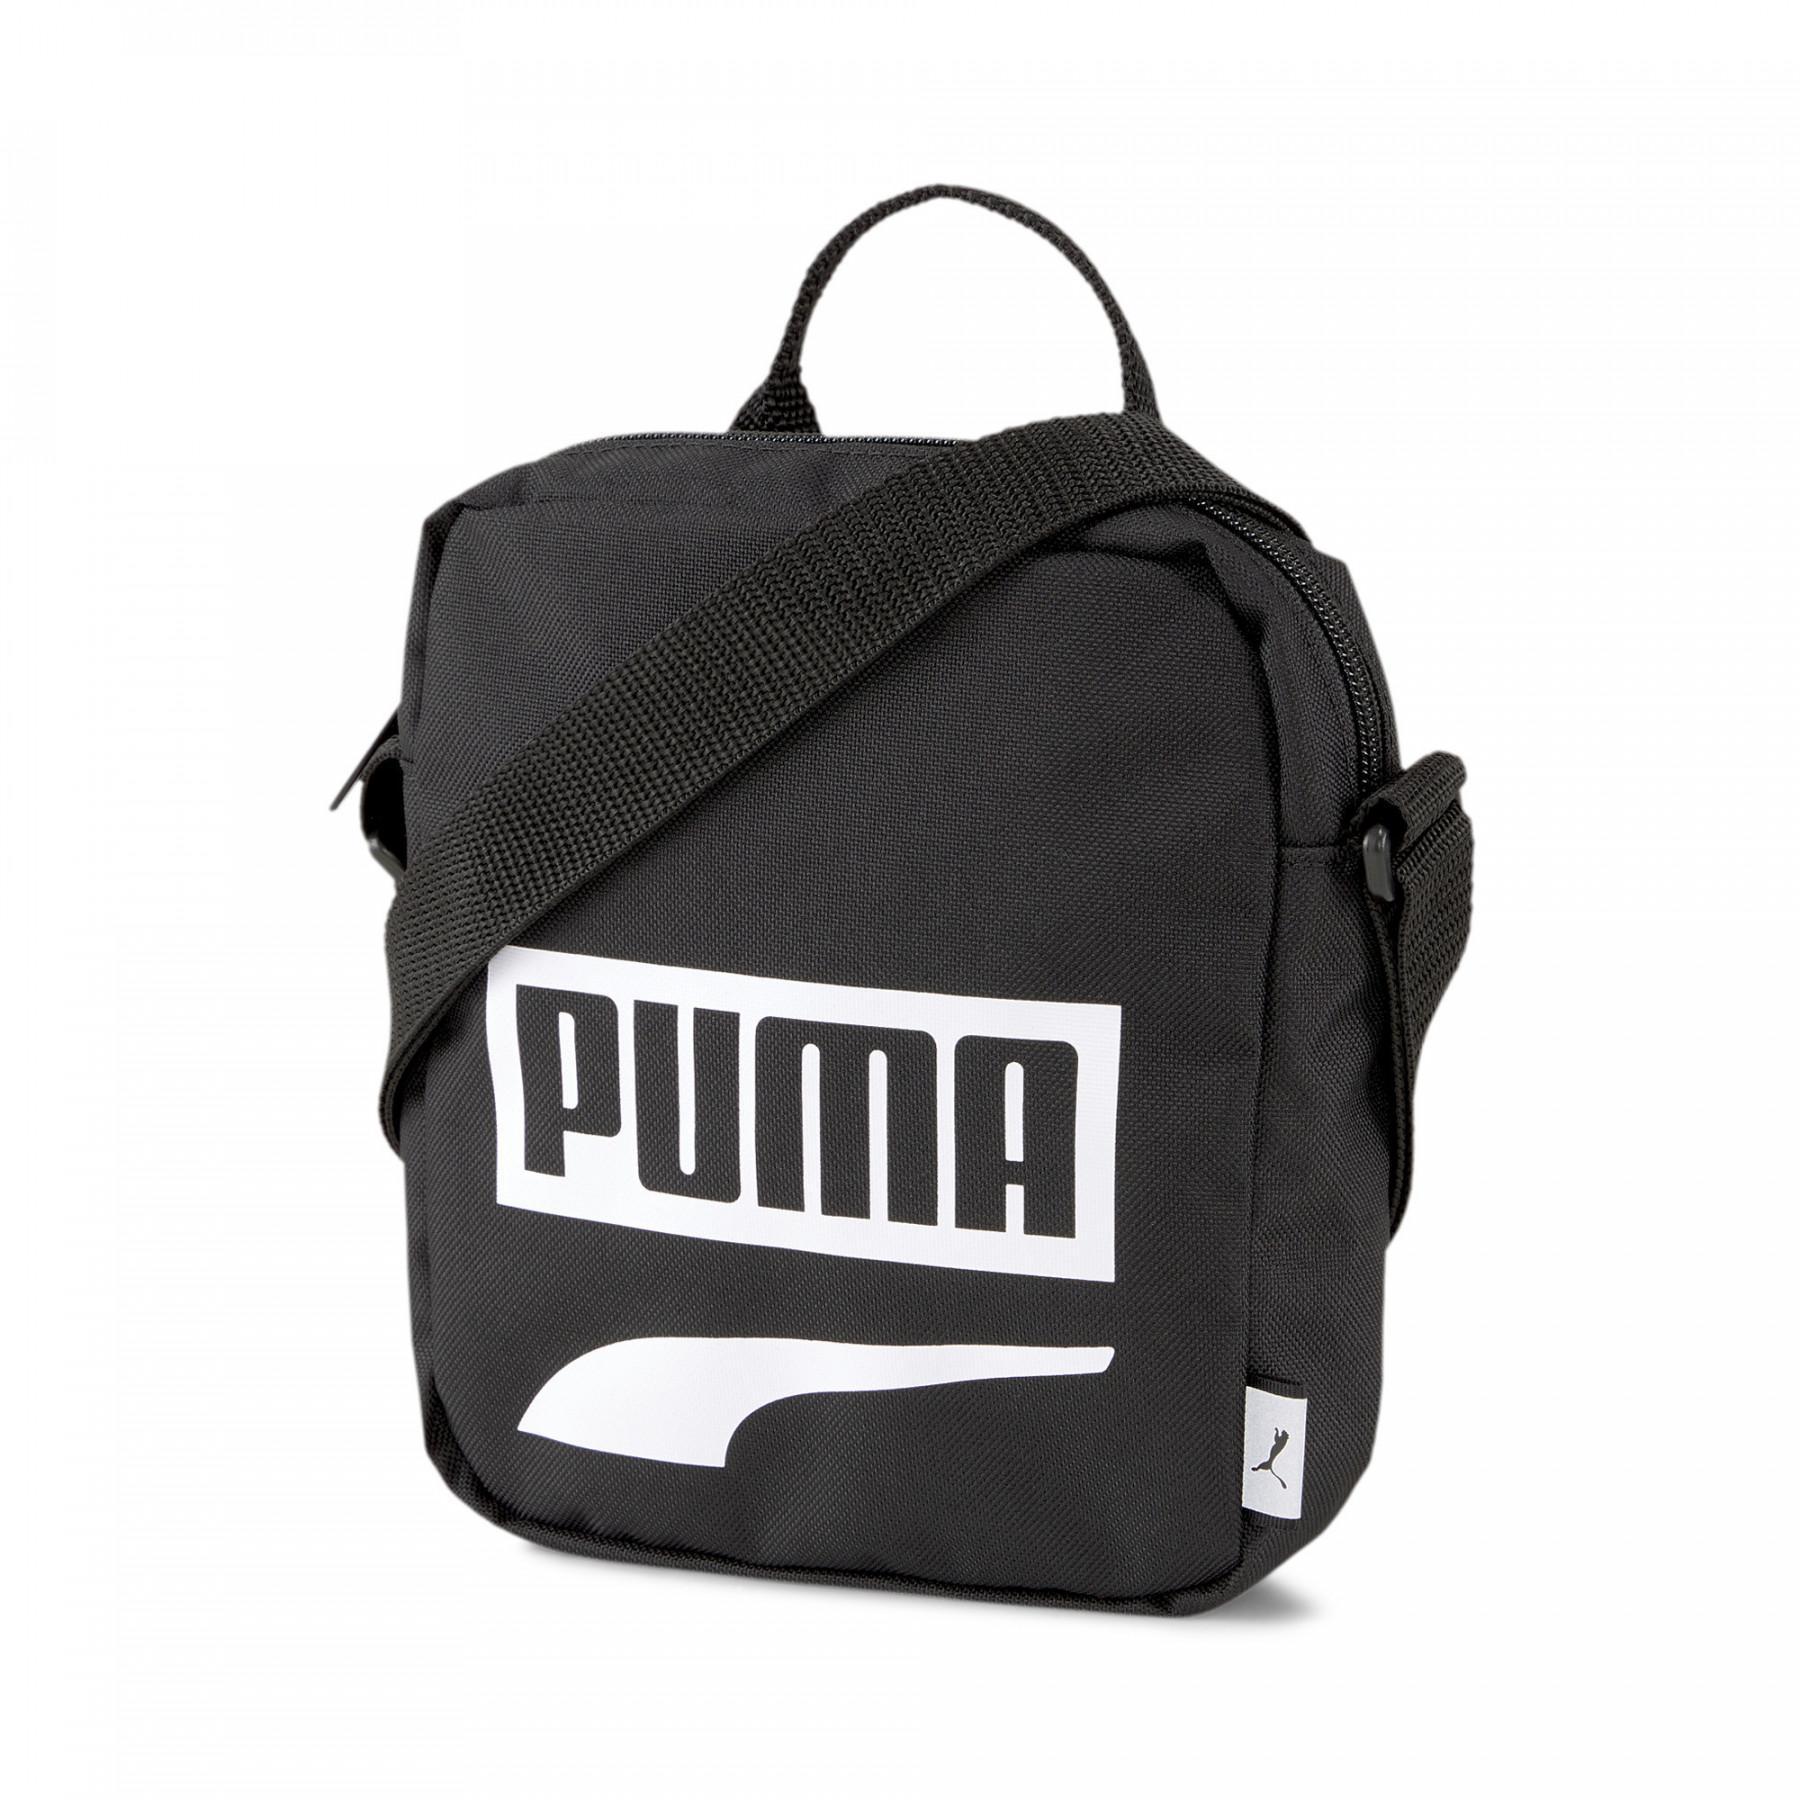 Väska Puma Plus Portable II